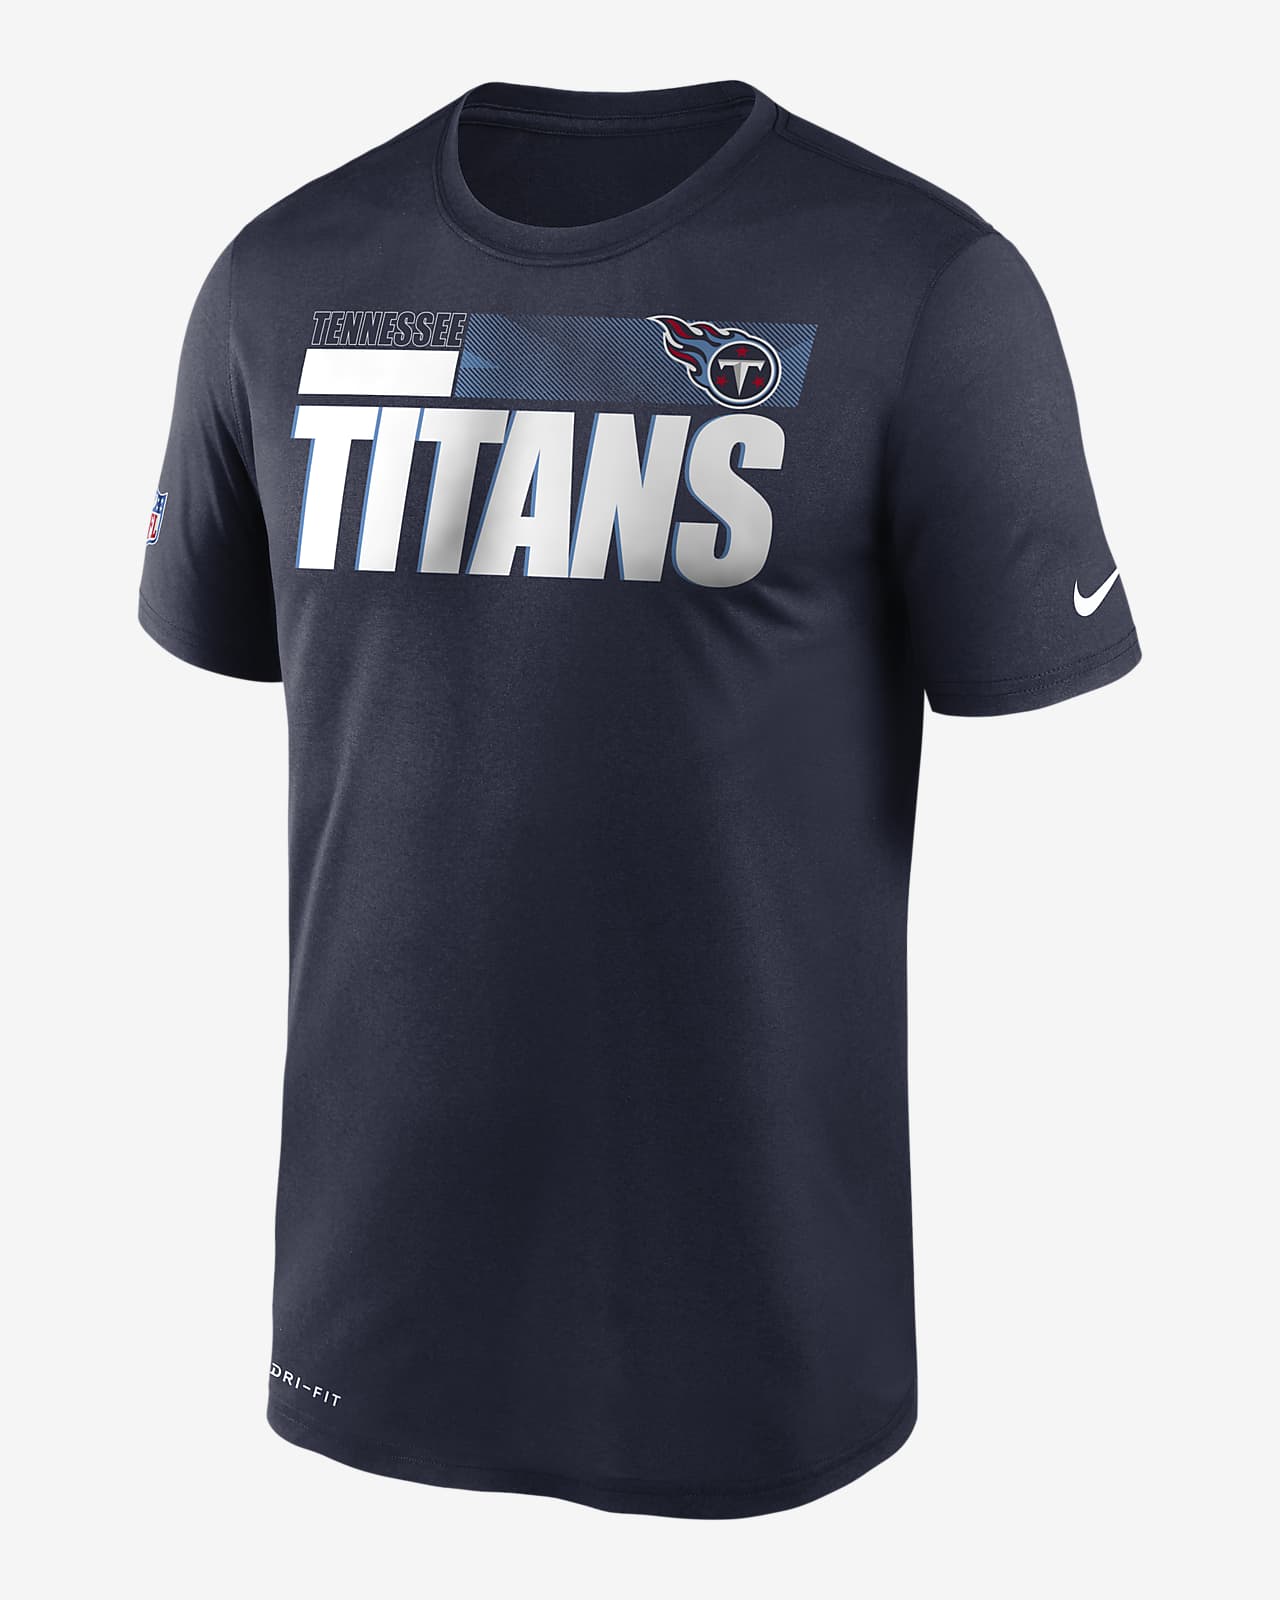 titans dri fit shirt